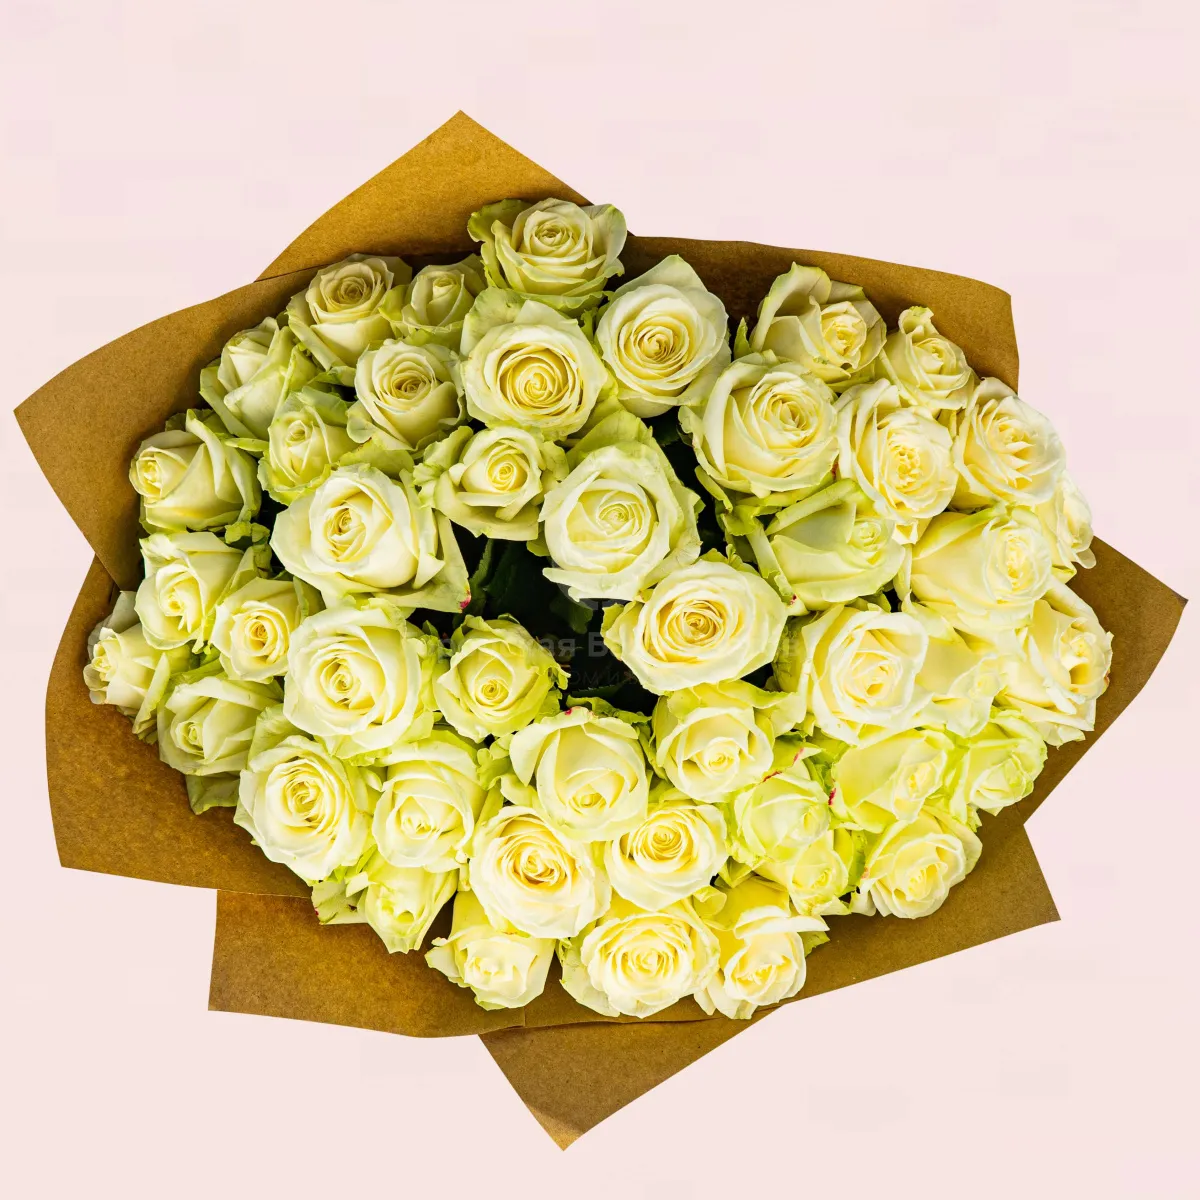 45 бело-зеленых роз (50 см)